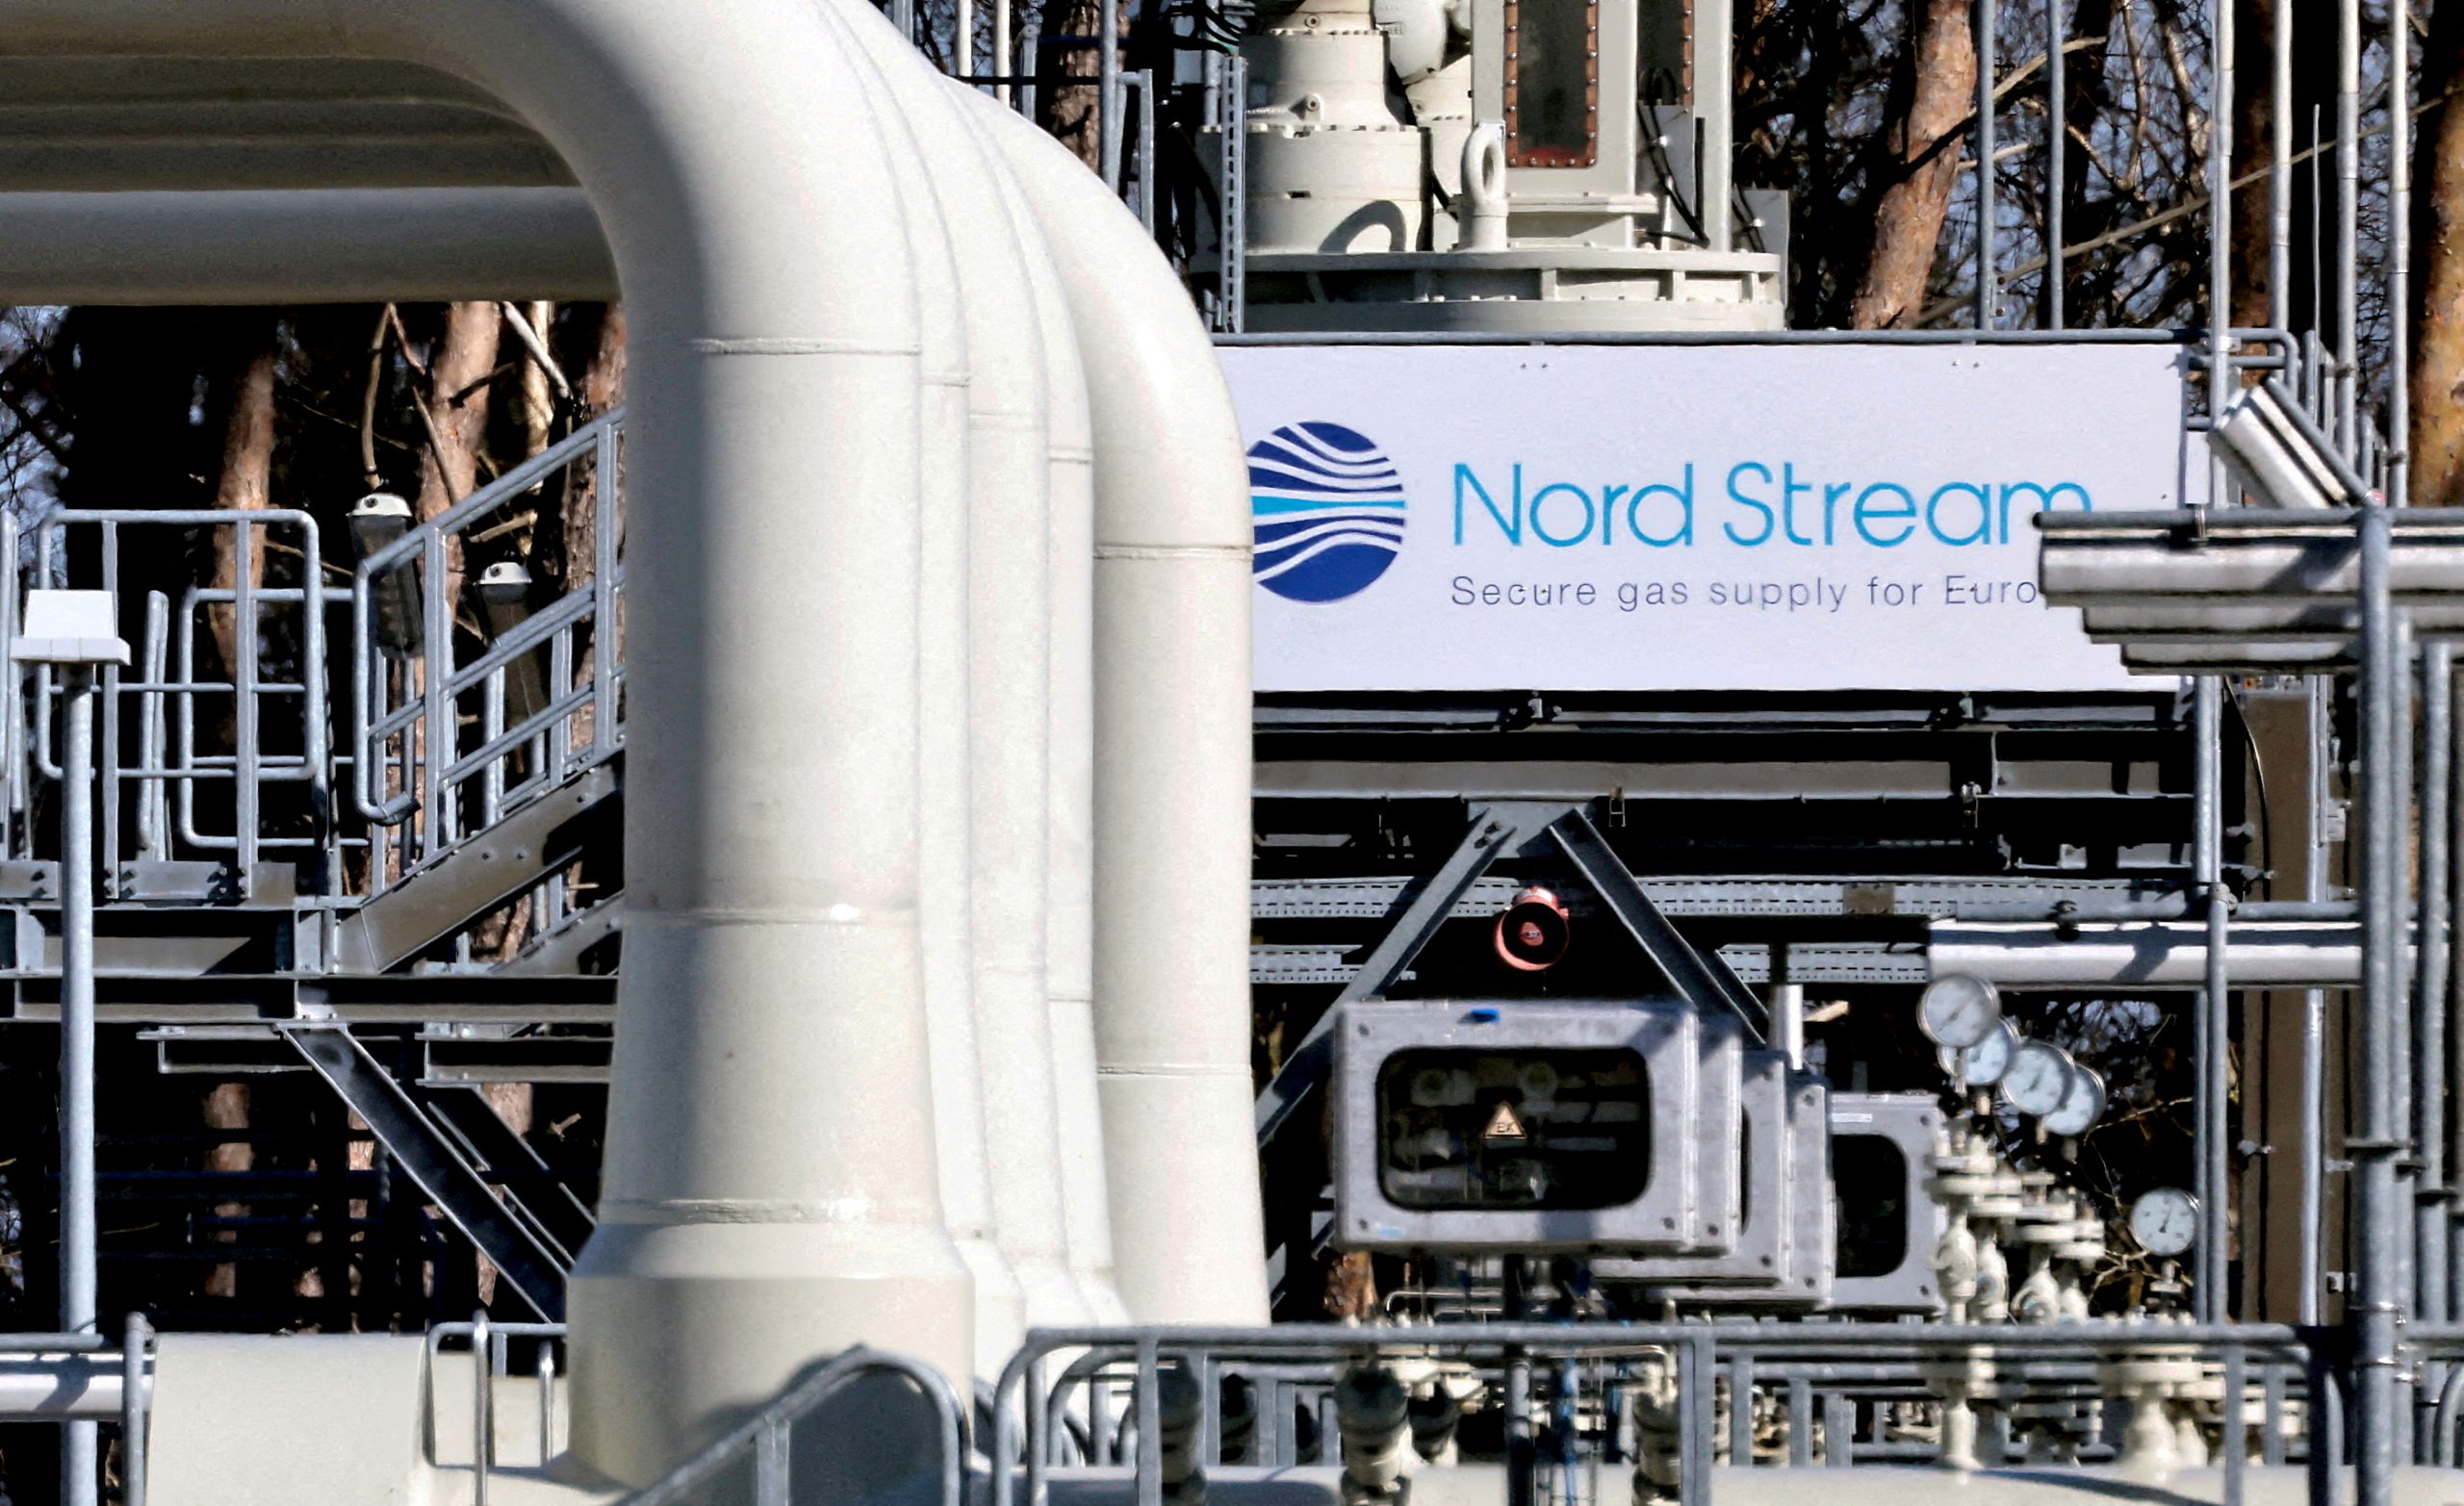 Σουηδία: Προειδοποίησε για διαρροή στον Nord Stream 1